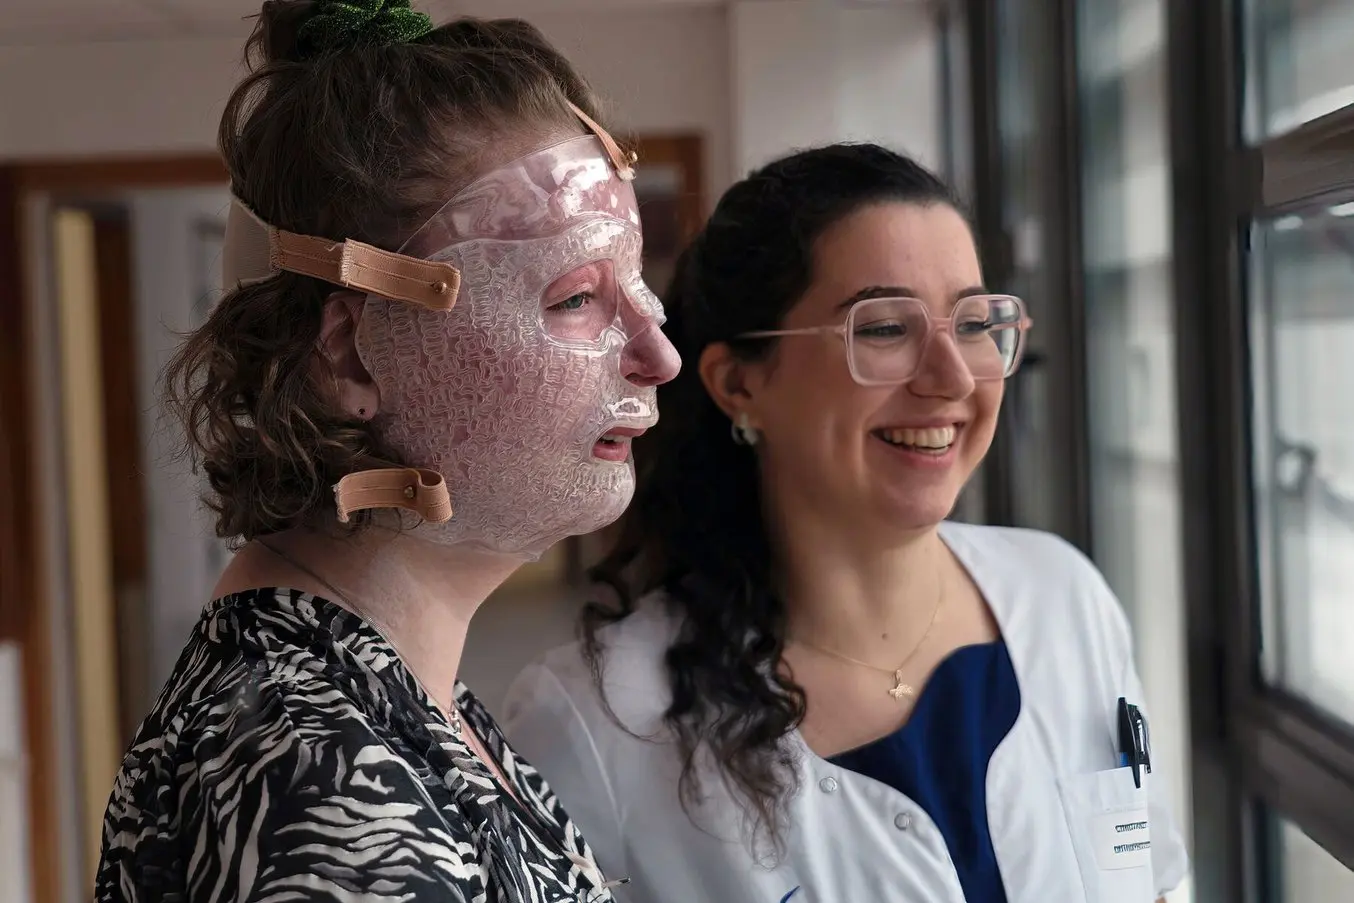 Patientin mit schweren Verbrennungen trägt eine Gesichtsmaske, die mittels 3D-Druck hergestellt wurde.